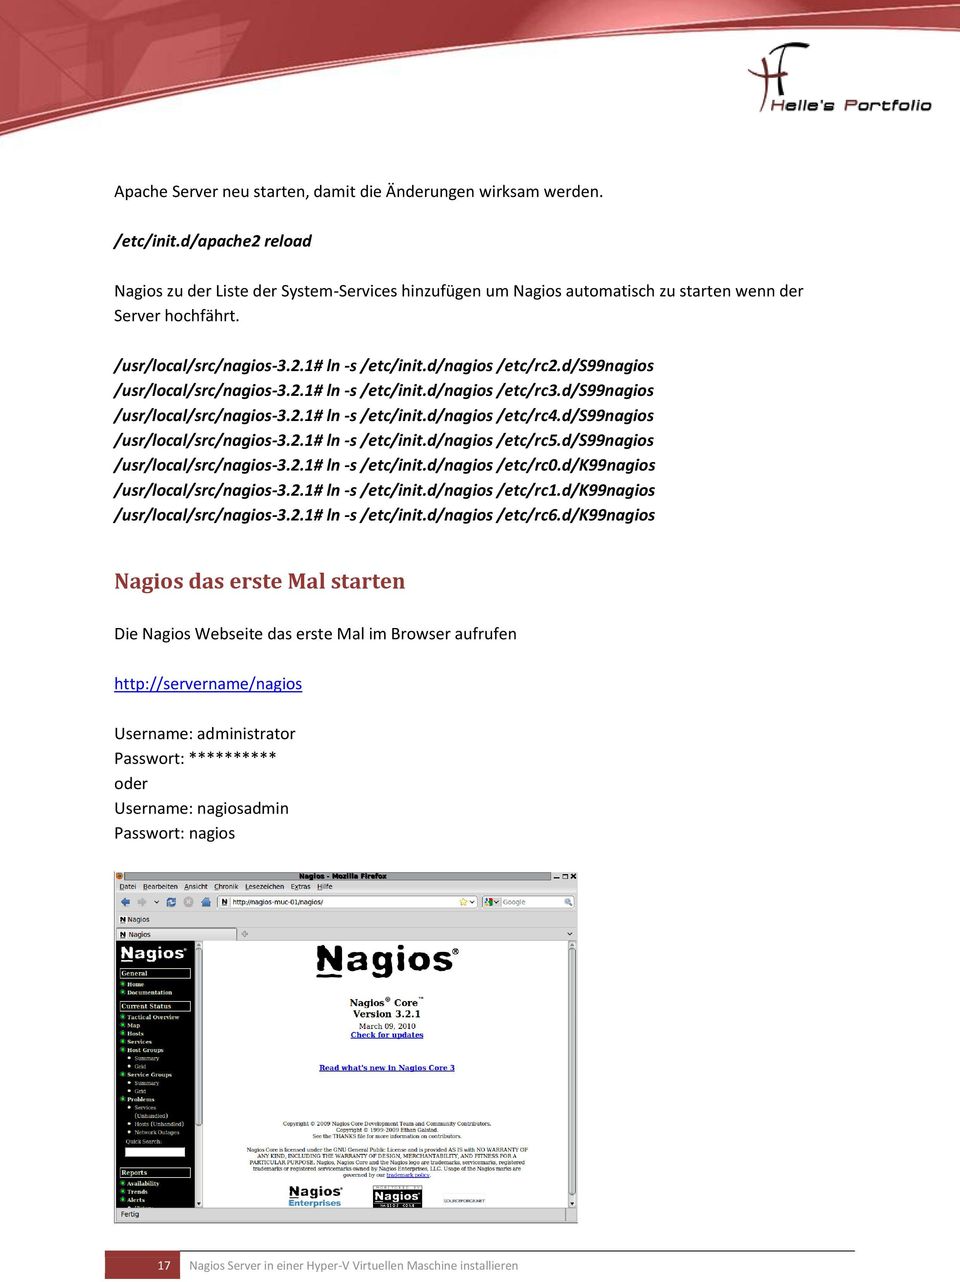 d/s99nagios /usr/local/src/nagios-3.2.1# ln -s /etc/init.d/nagios /etc/rc3.d/s99nagios /usr/local/src/nagios-3.2.1# ln -s /etc/init.d/nagios /etc/rc4.d/s99nagios /usr/local/src/nagios-3.2.1# ln -s /etc/init.d/nagios /etc/rc5.